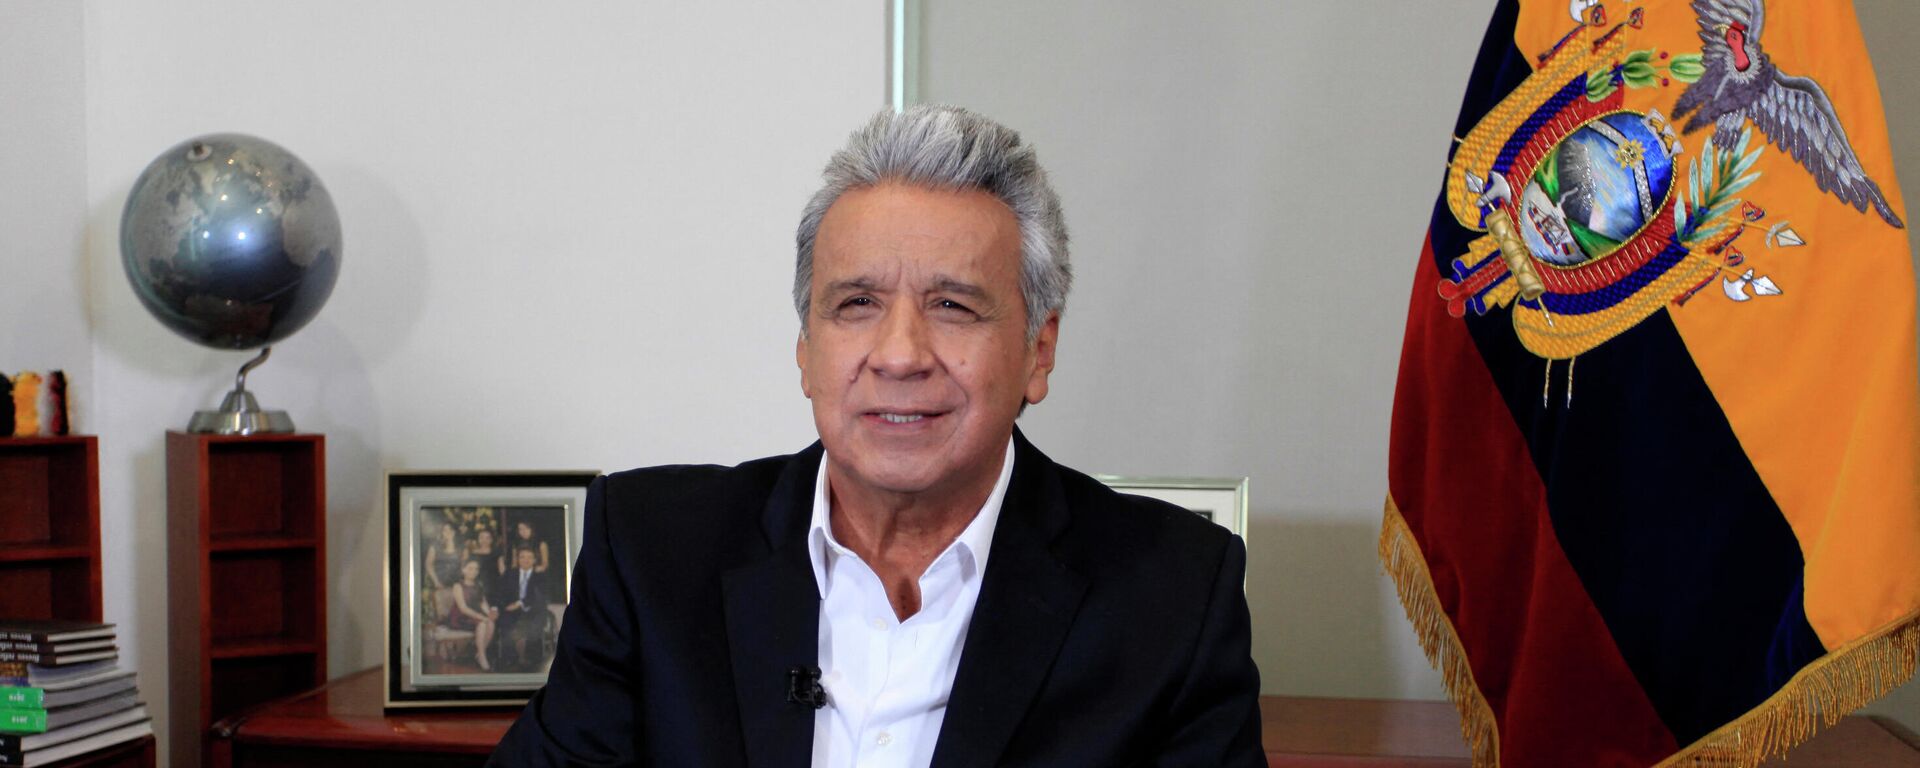 Lenín Moreno, presidente de Ecuador - Sputnik Mundo, 1920, 22.04.2021